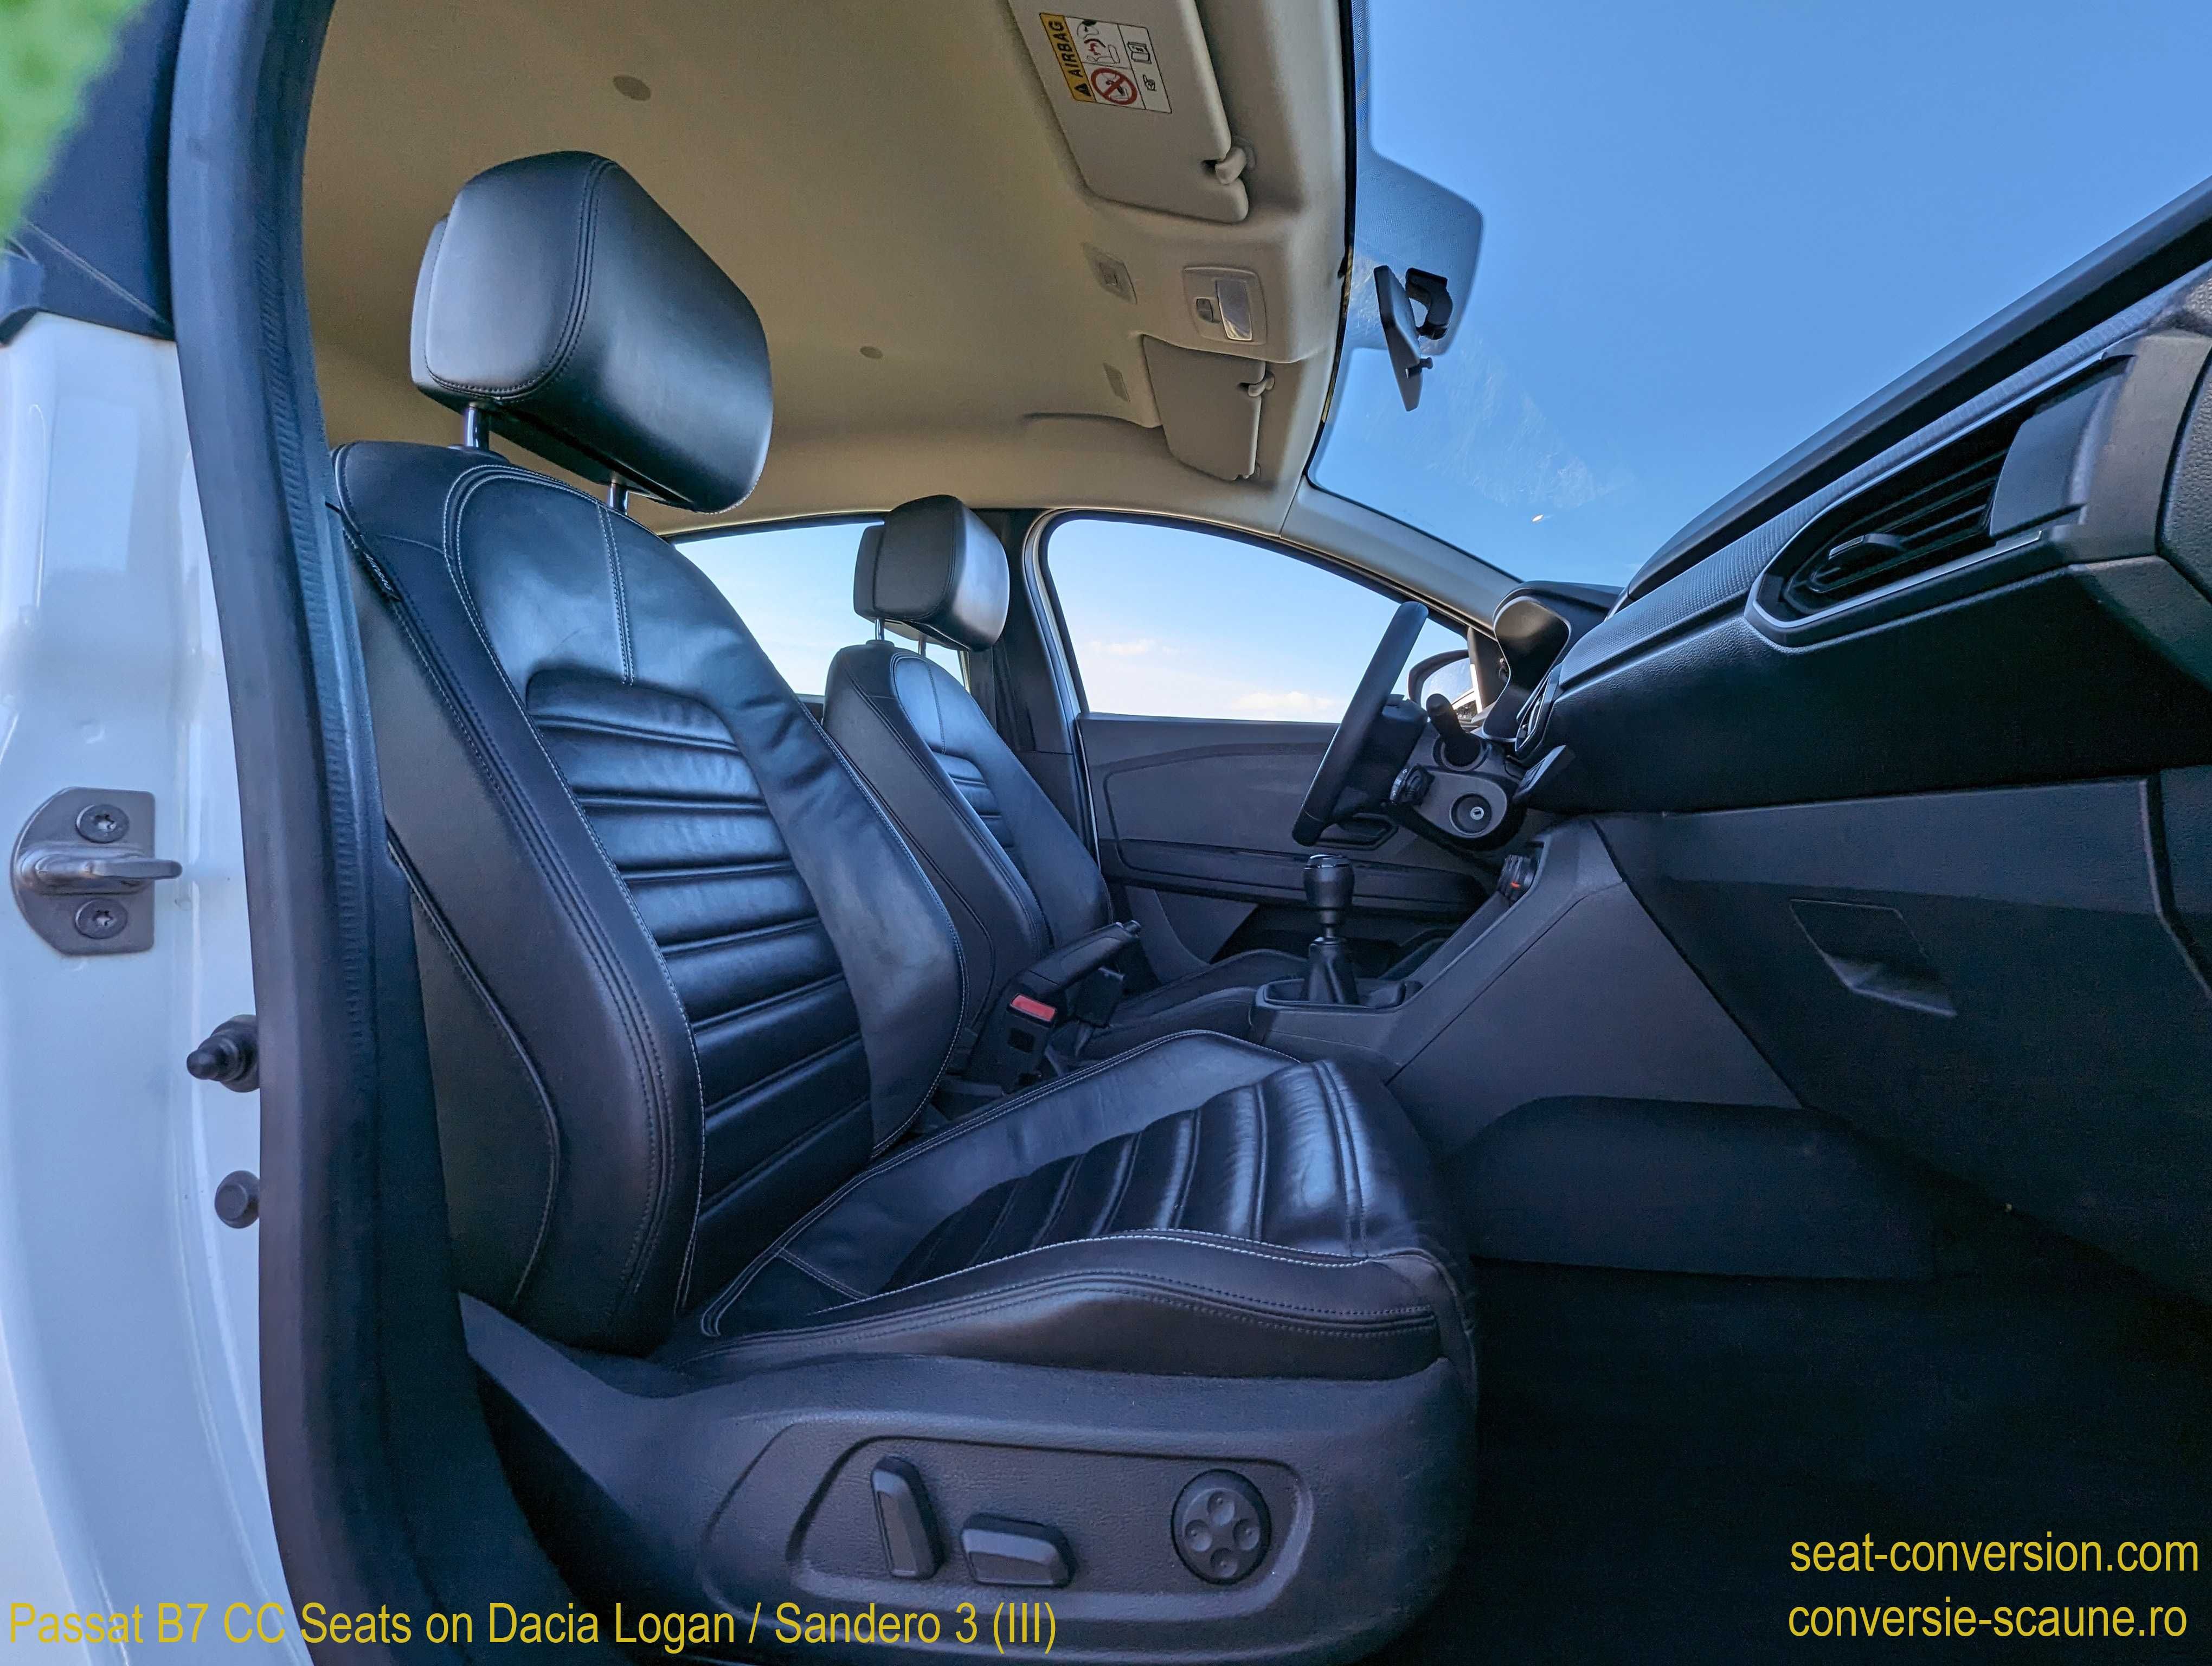 Sistem conversie scaune Passat B7 CC - Logan Sandero 3 III 2020 +